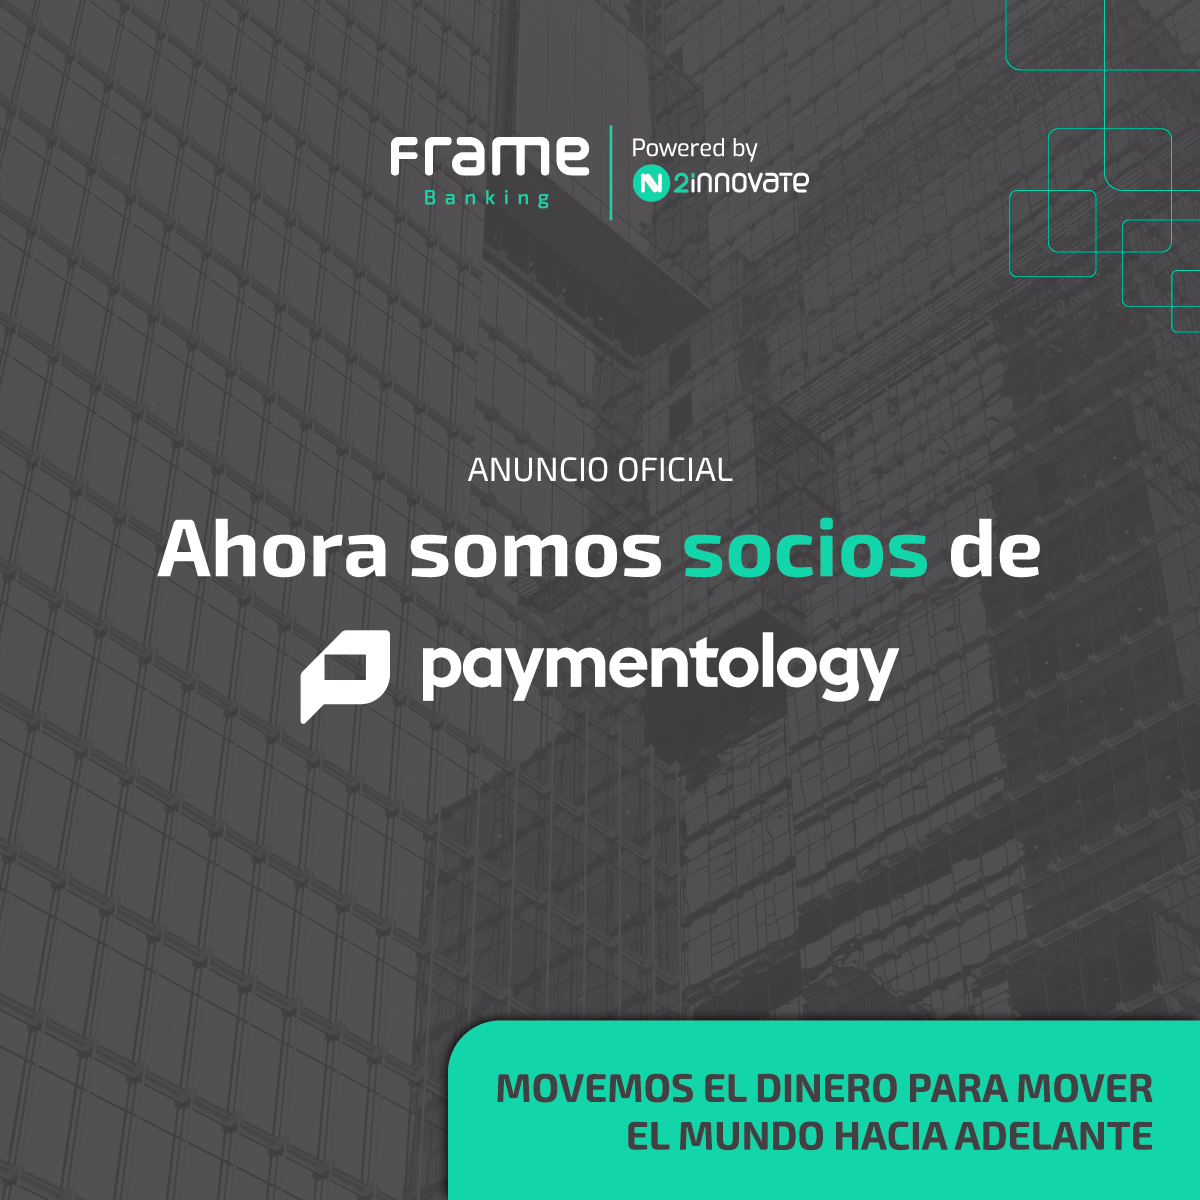 2innovate se asocia con Paymentology para impulsar la innovación en el procesamiento de pagos en América Latina